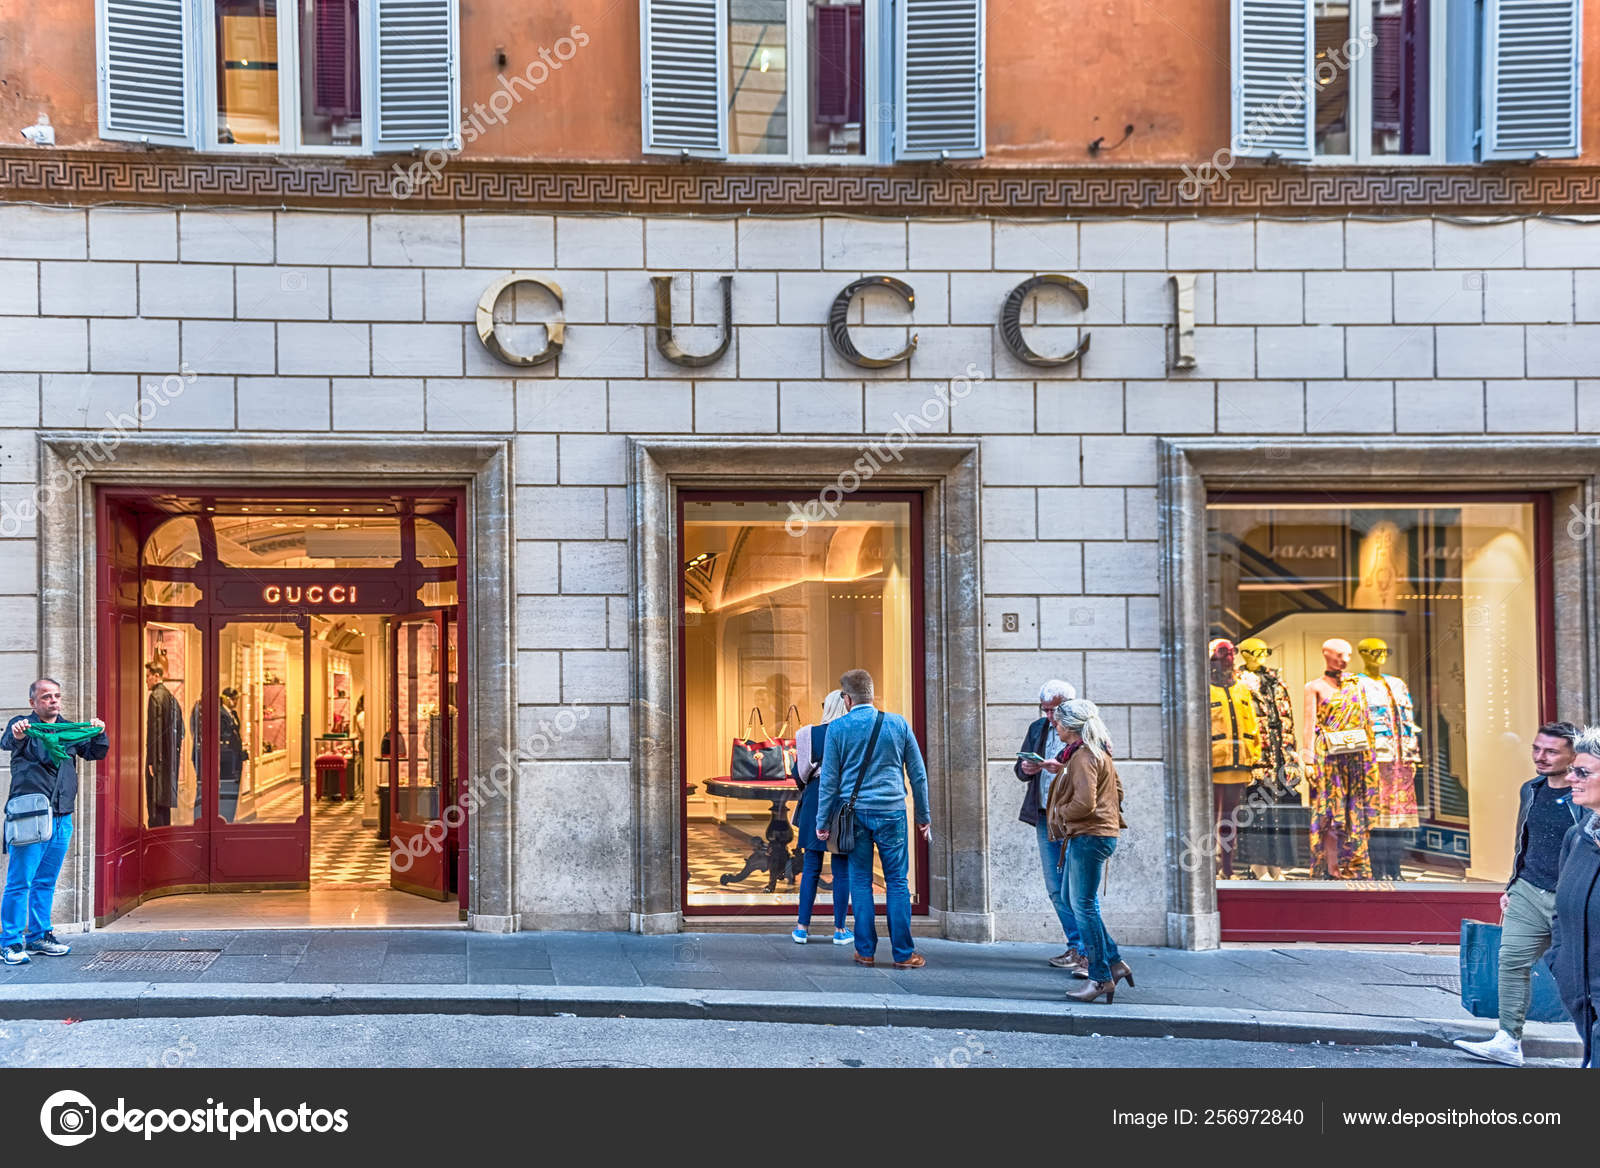 Gucci store Via Condotti fashion street, Rome, Italy – Stock Editorial Photo © marcorubino #256972840